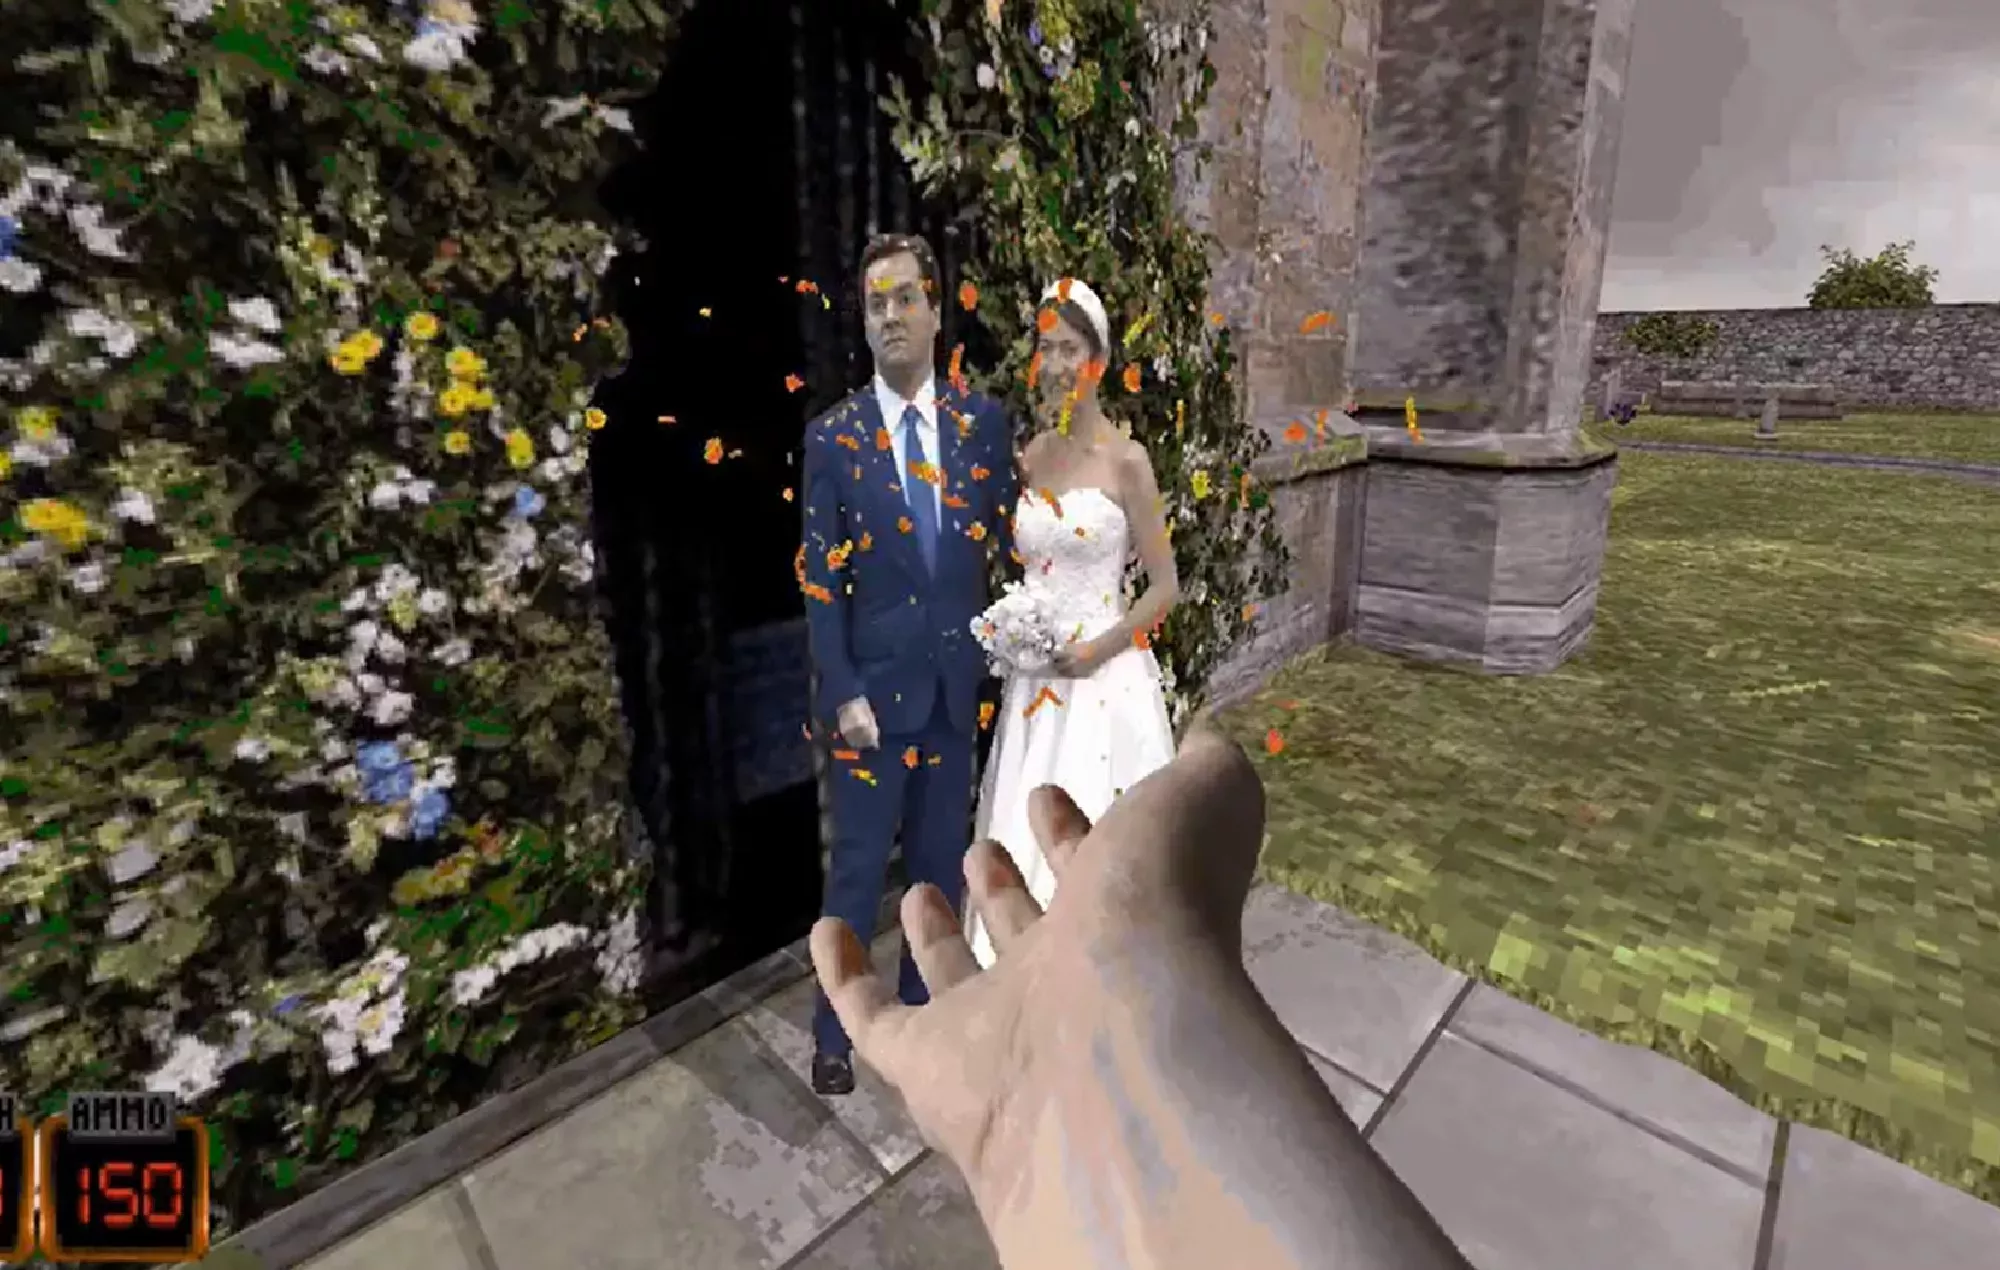 La boda de George Osborne se ha convertido en un nivel de 'Duke Nukem 3D